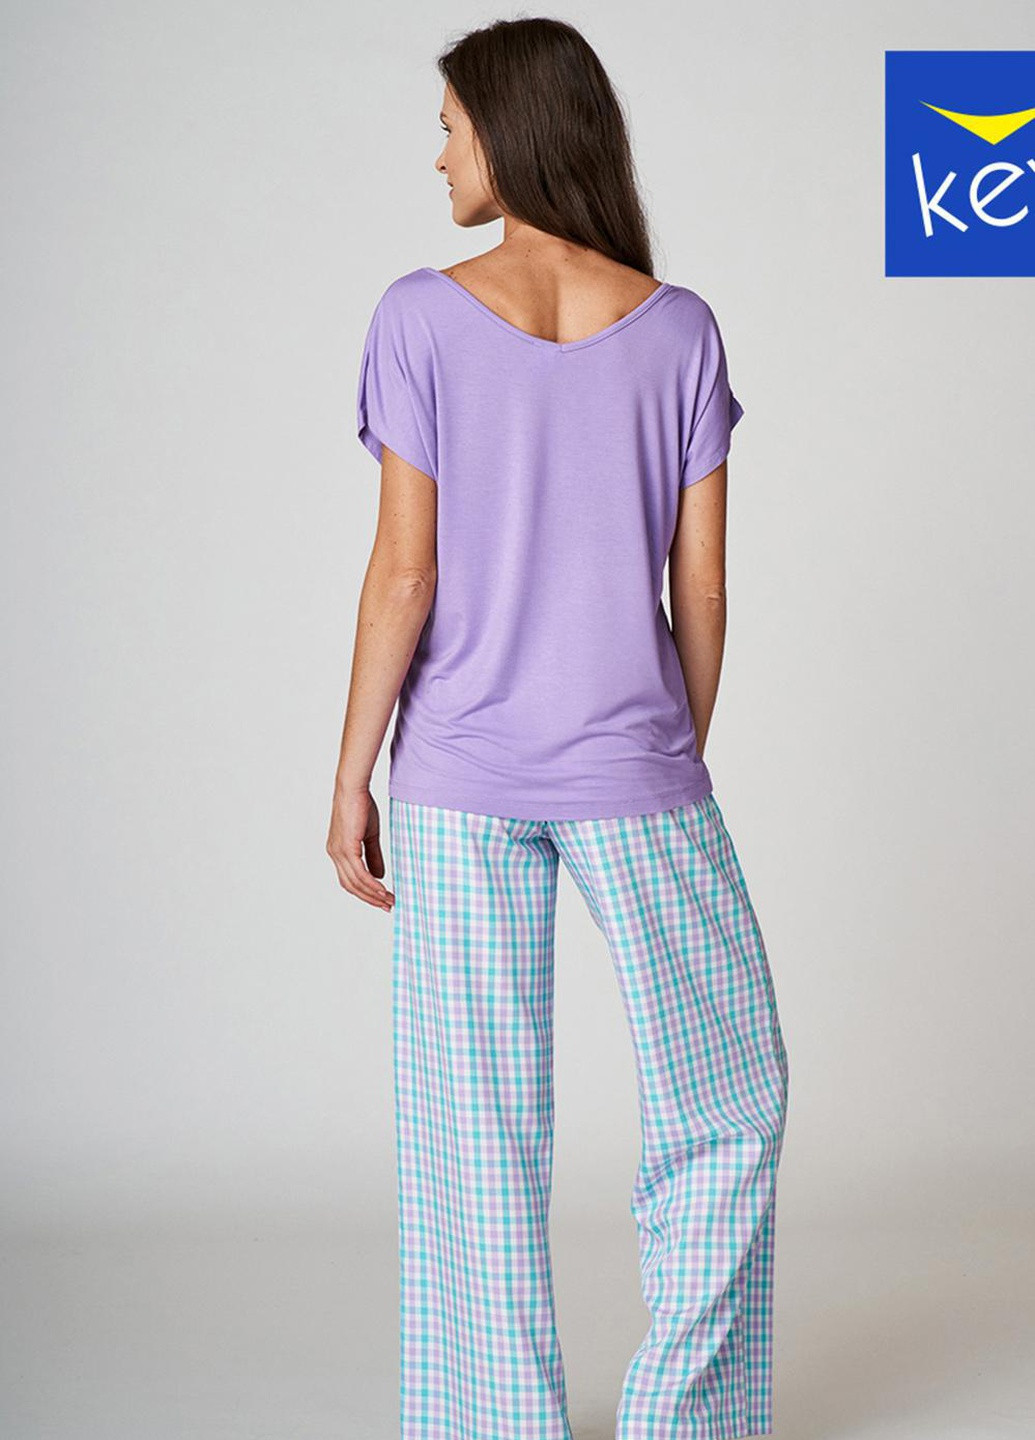 Темно-фиолетовая пижама женская xl принт lns 413 a22 Key